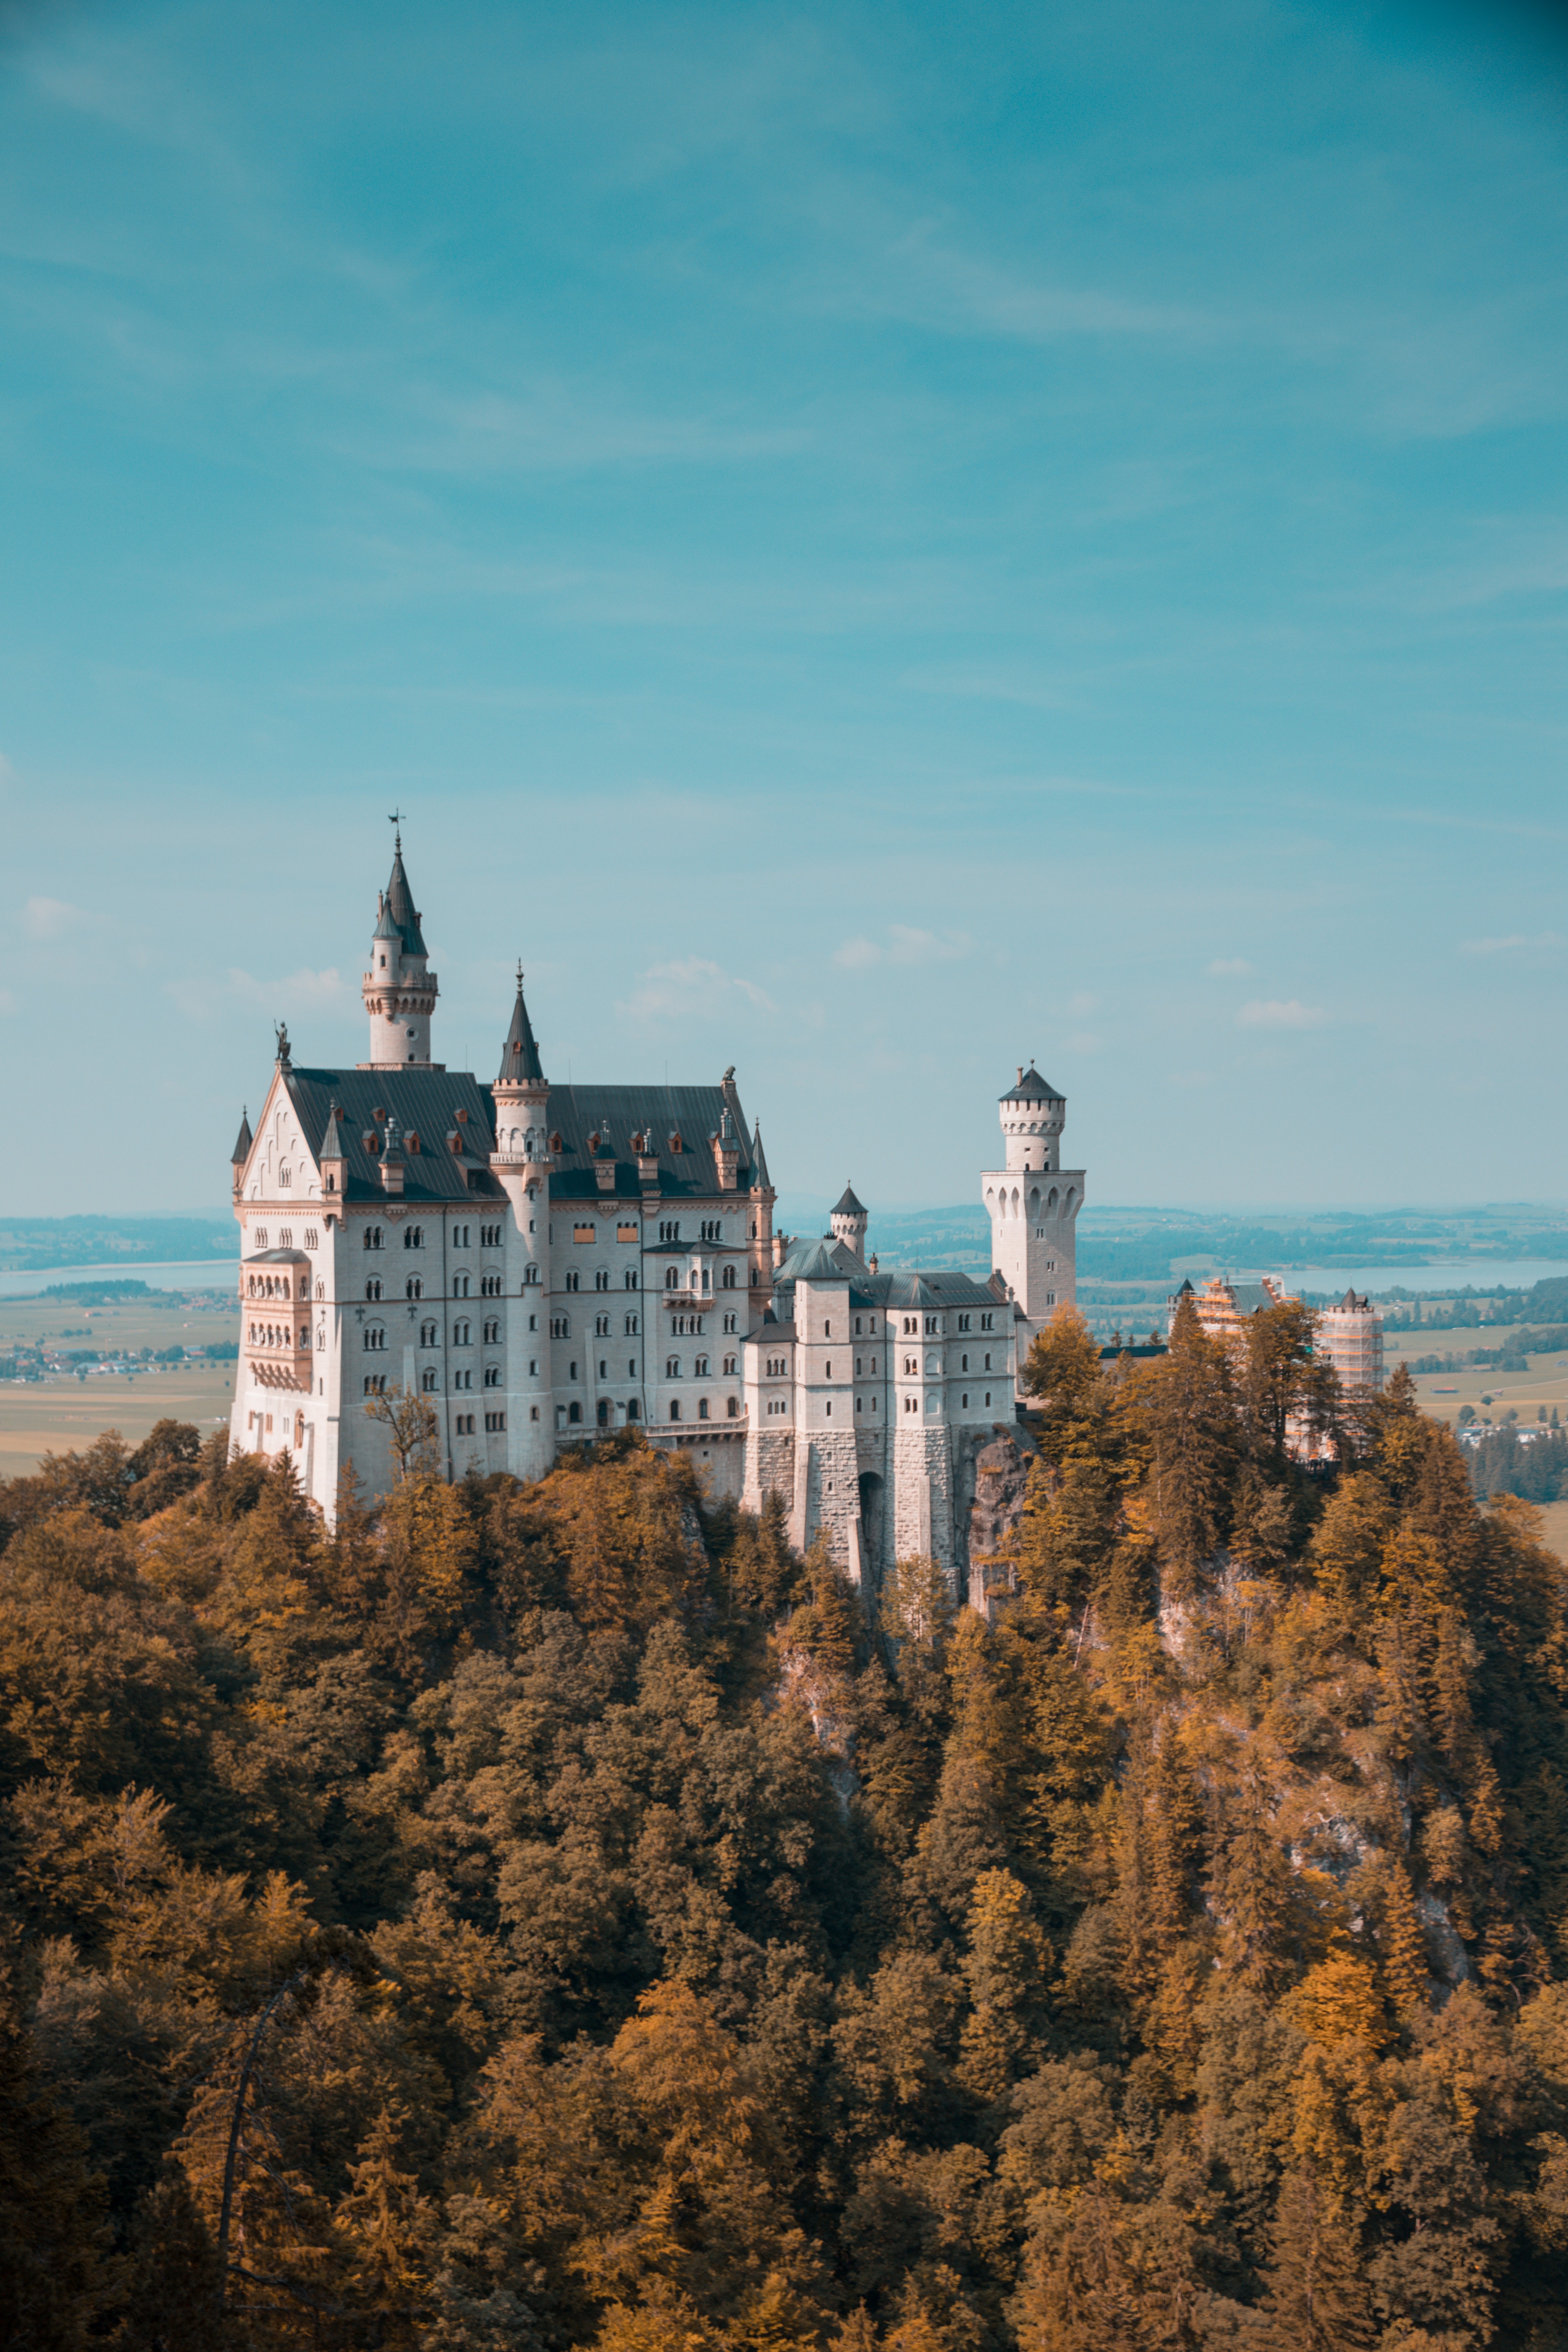 Das Schloss Neuschwanstein in Bayern, Deutschland.